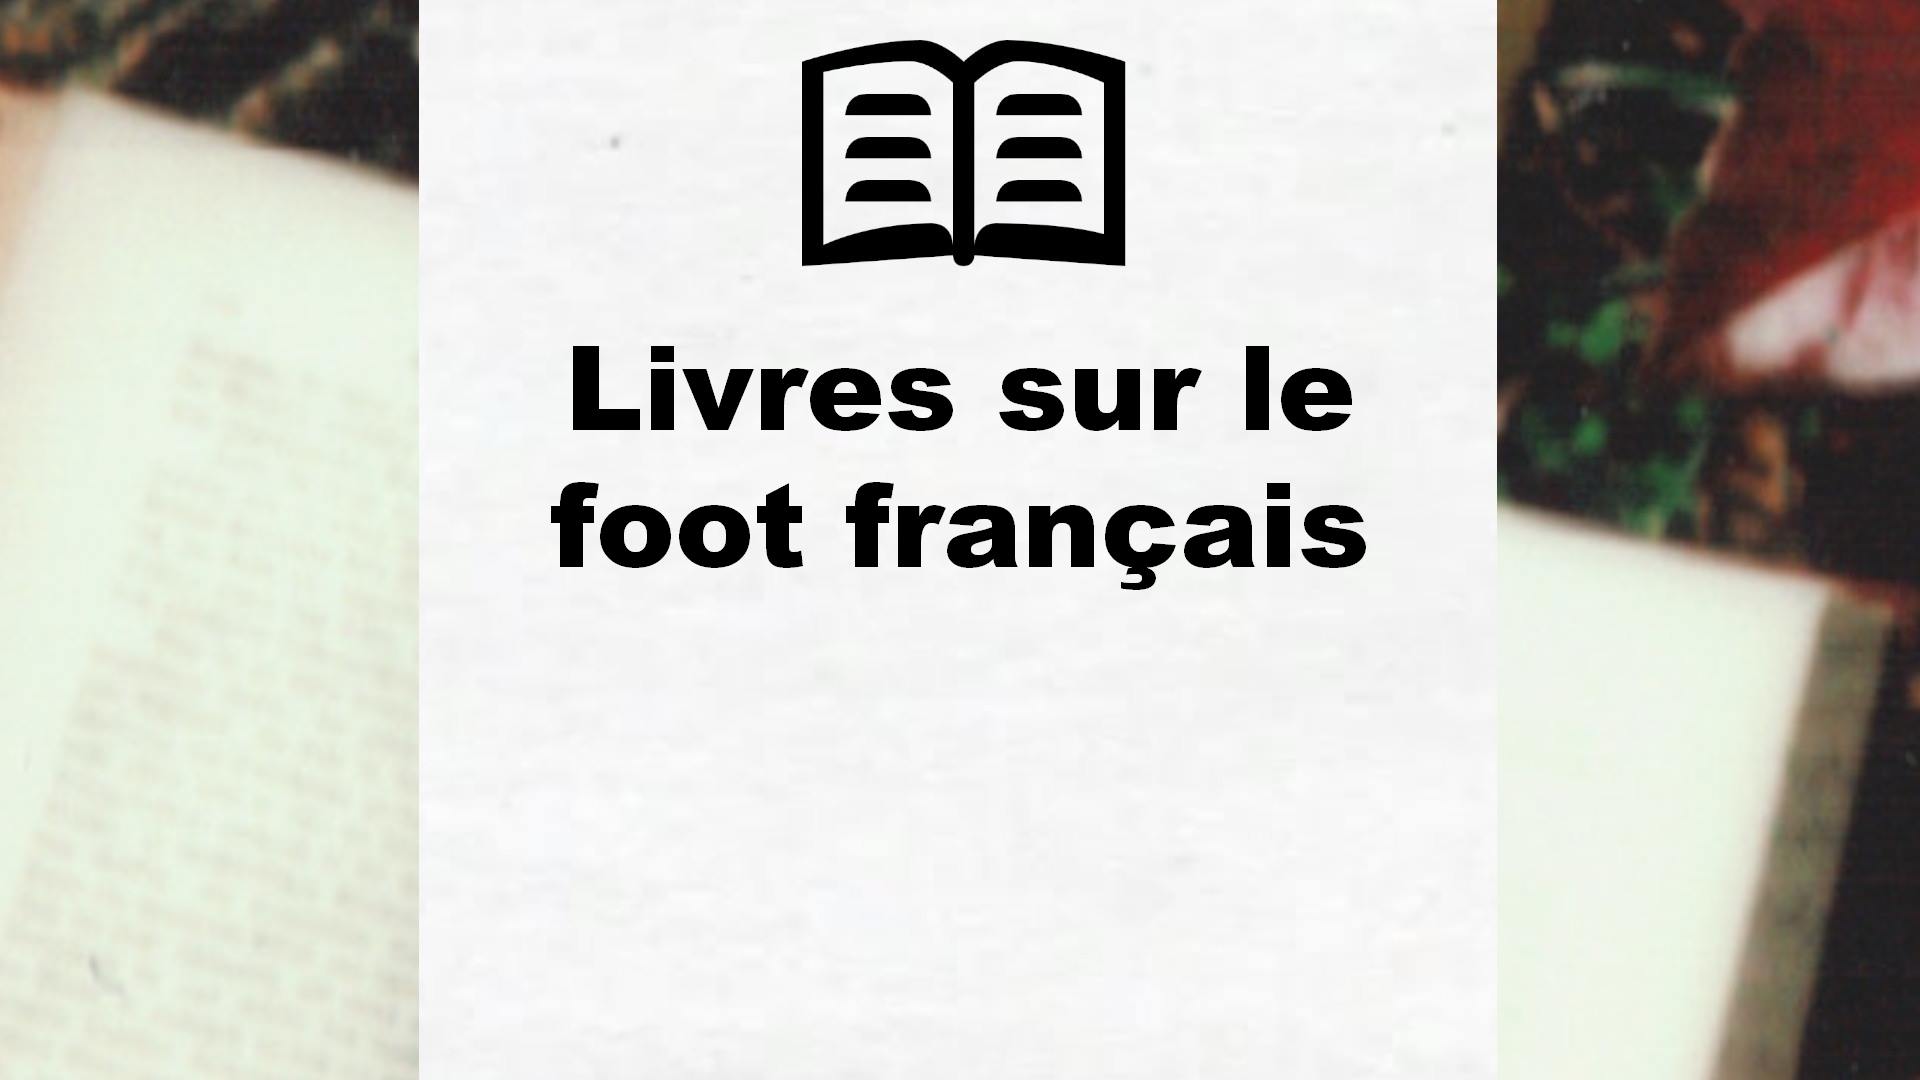 Livres sur le foot français